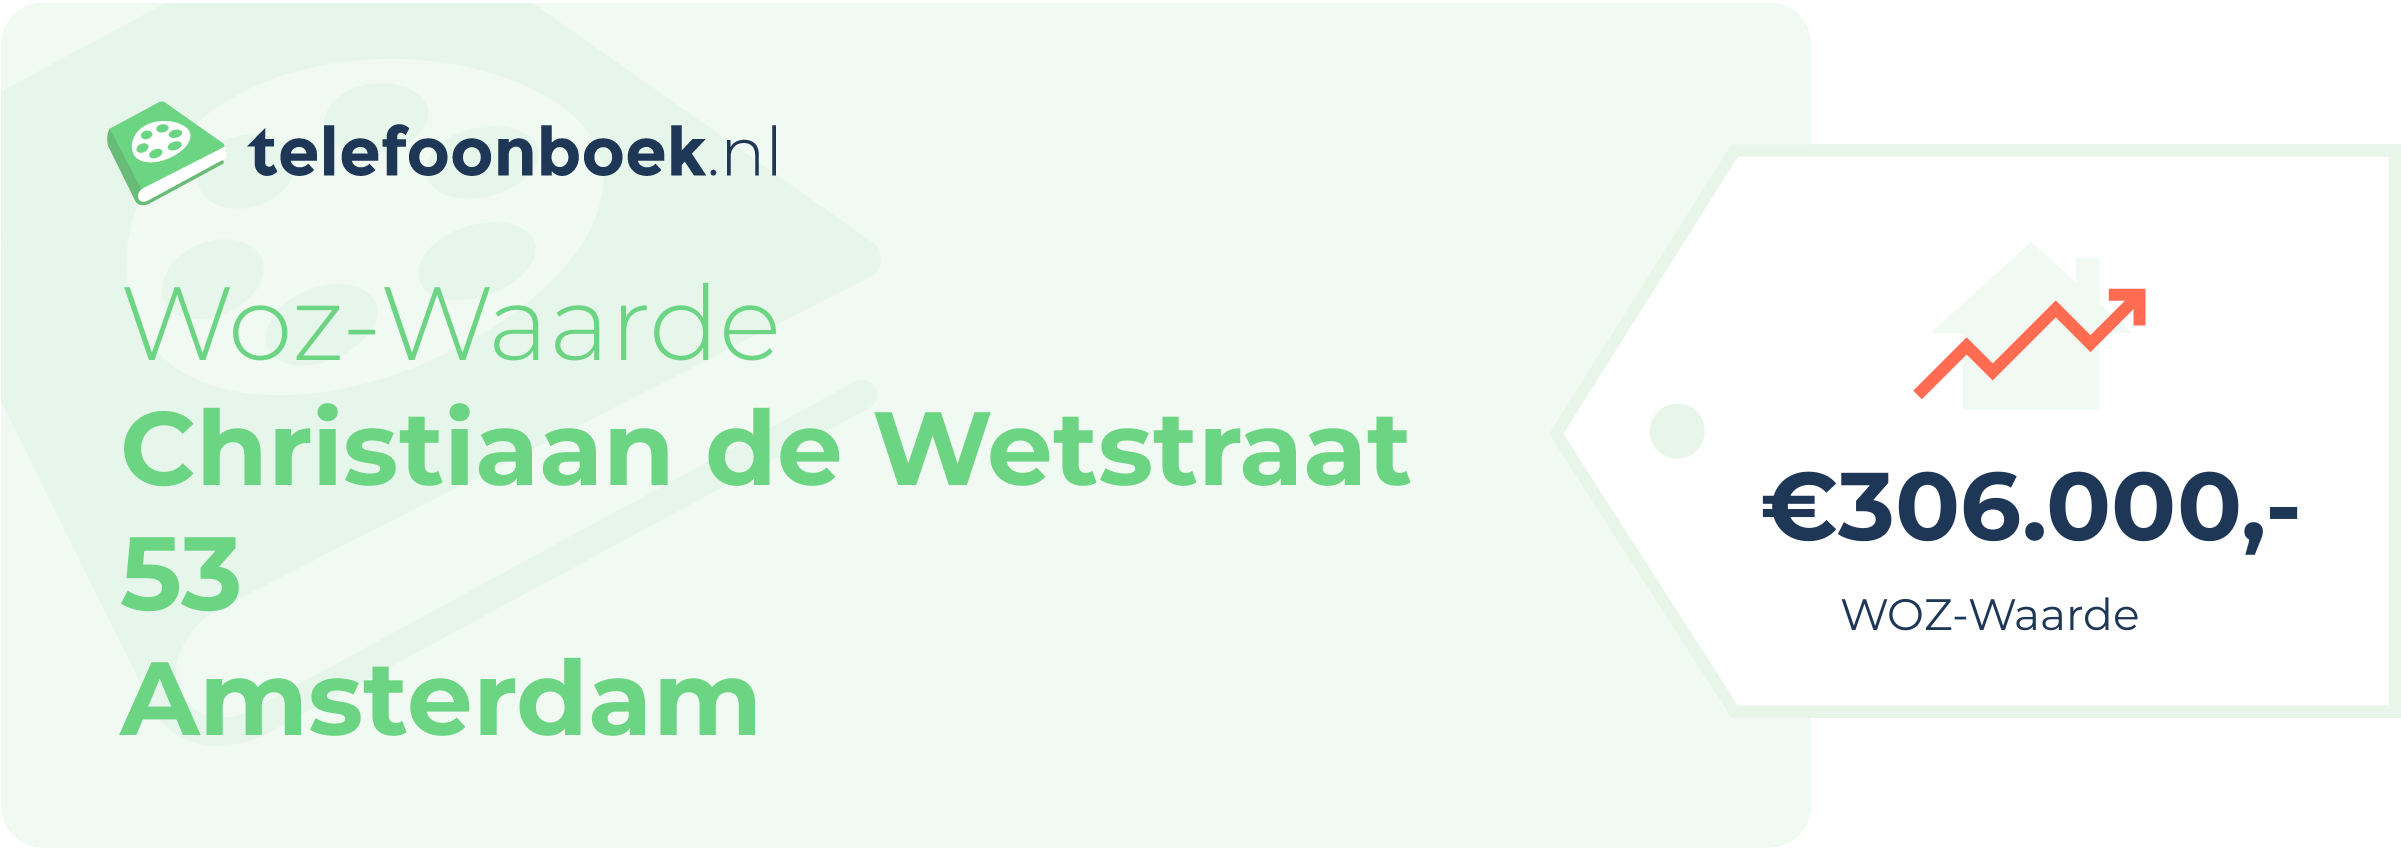 WOZ-waarde Christiaan De Wetstraat 53 Amsterdam